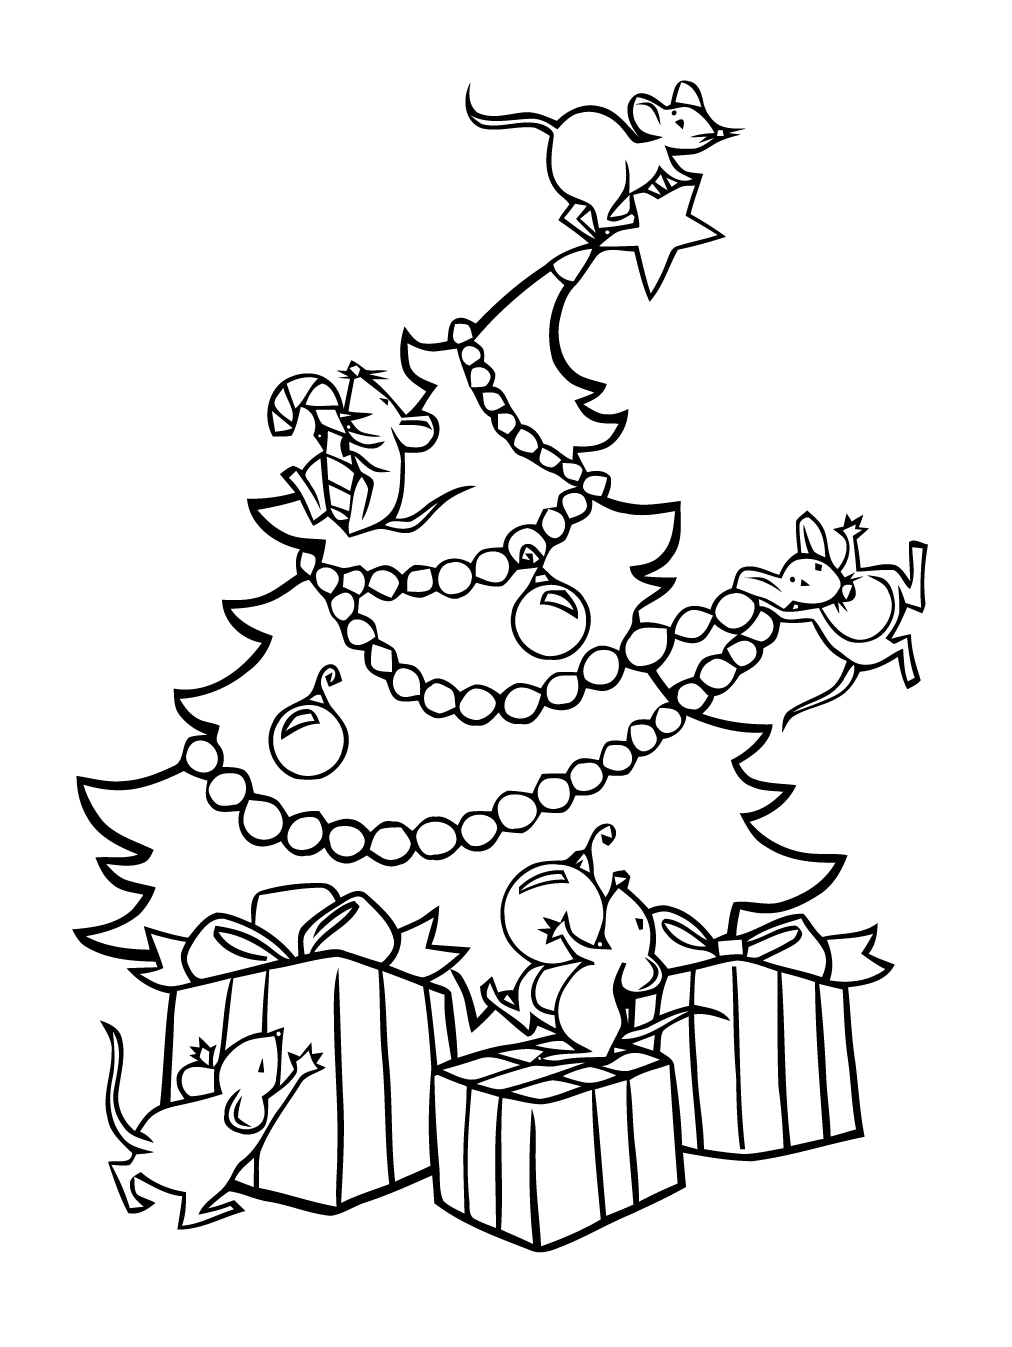 Divertidas páginas para colorear del árbol de Navidad